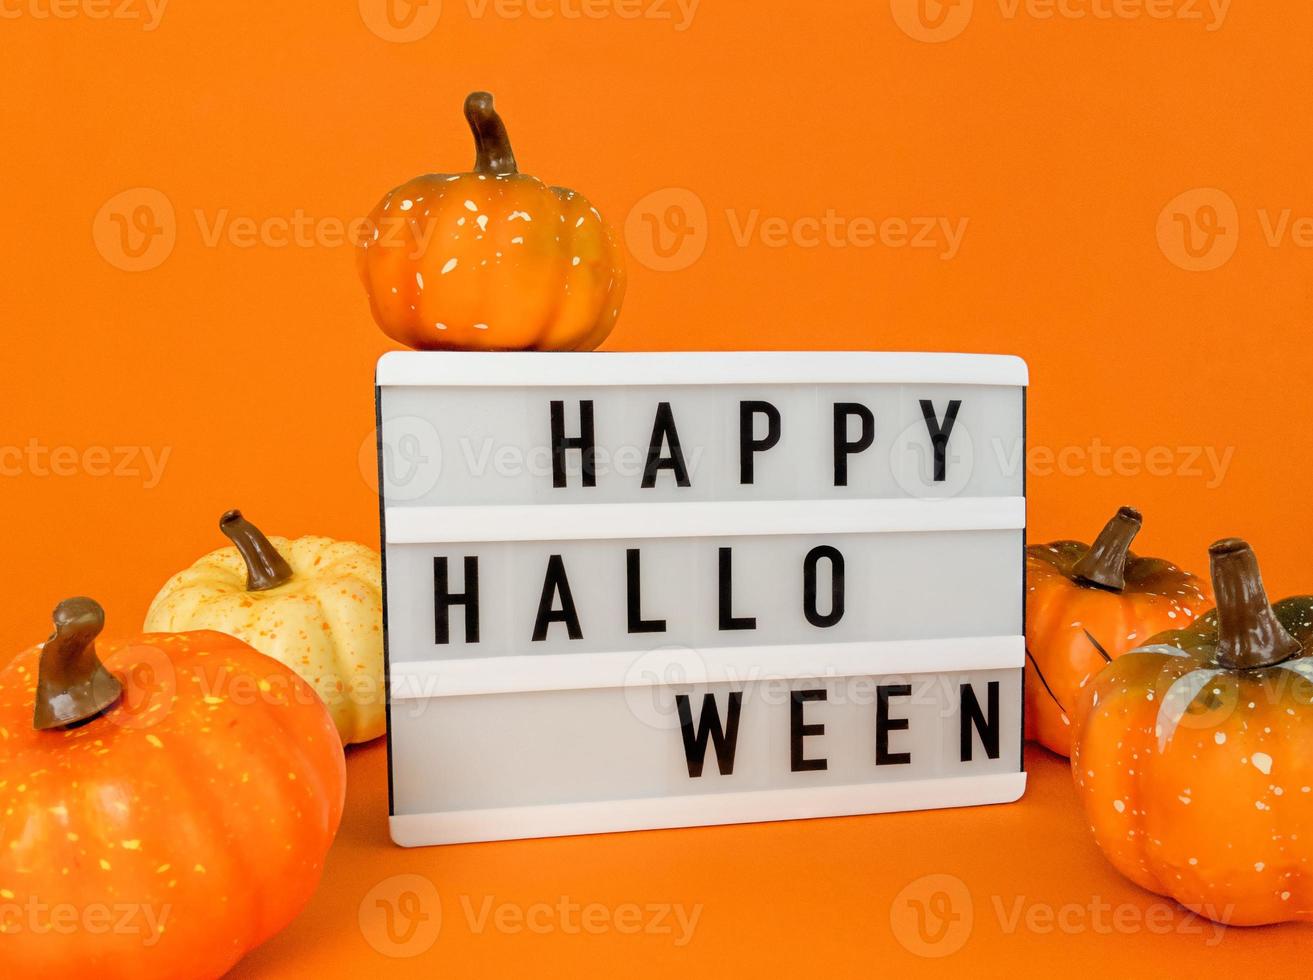 lightbox met happy halloween-uitdrukking en pompoenen op oranje achtergrond foto